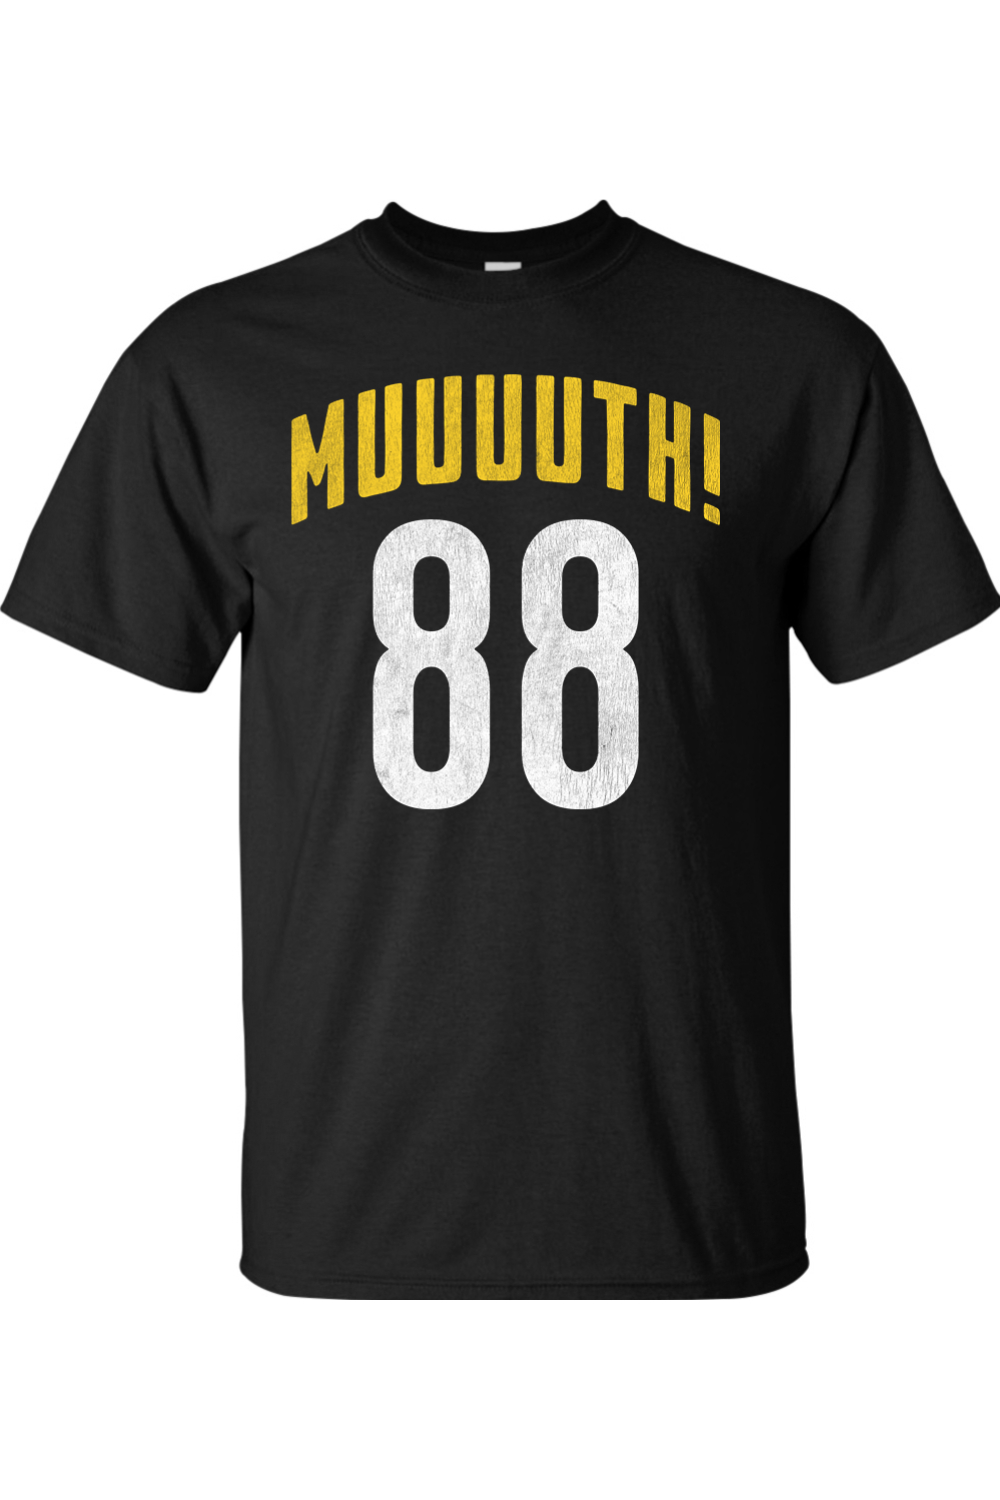 Muuuuth! - Big & Tall Tee - Yinzylvania